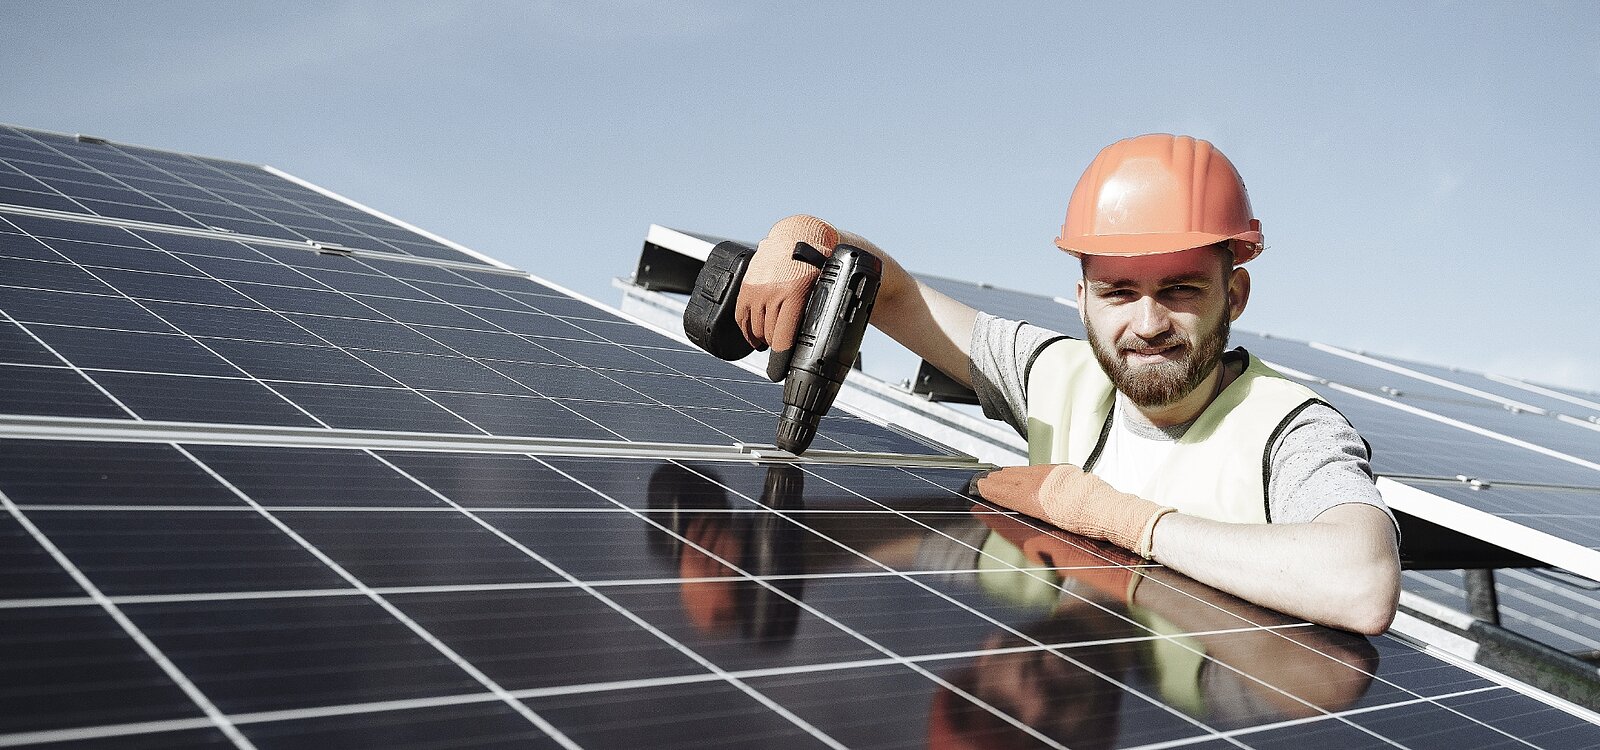 Abbildung: Junger Handwerker bei der Montage von Solarpanels